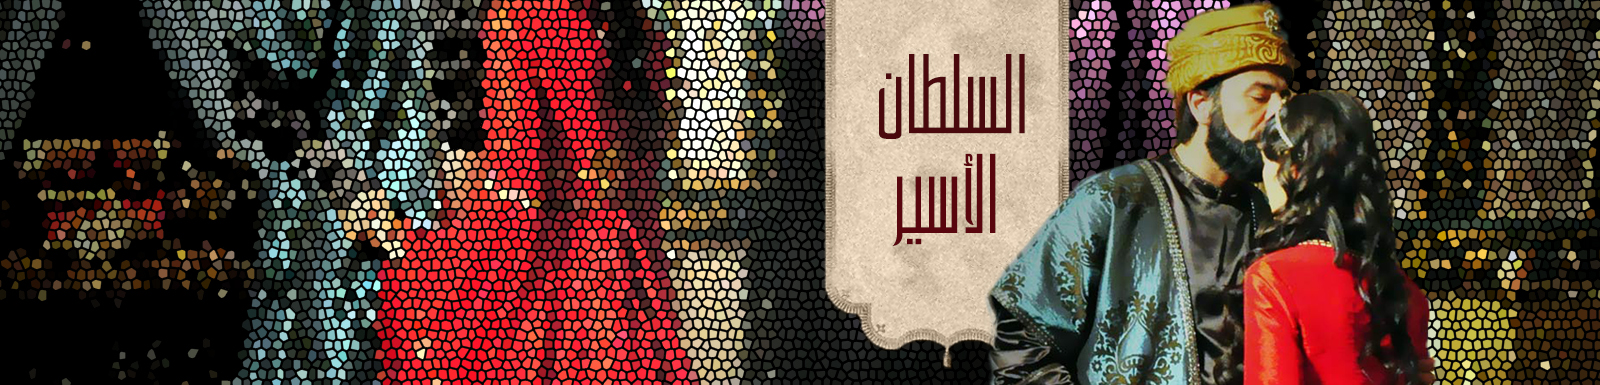 مشاهدة مسلسل السلطان الأسير الحلقة 1 الأولى 2015 كاملة mbc